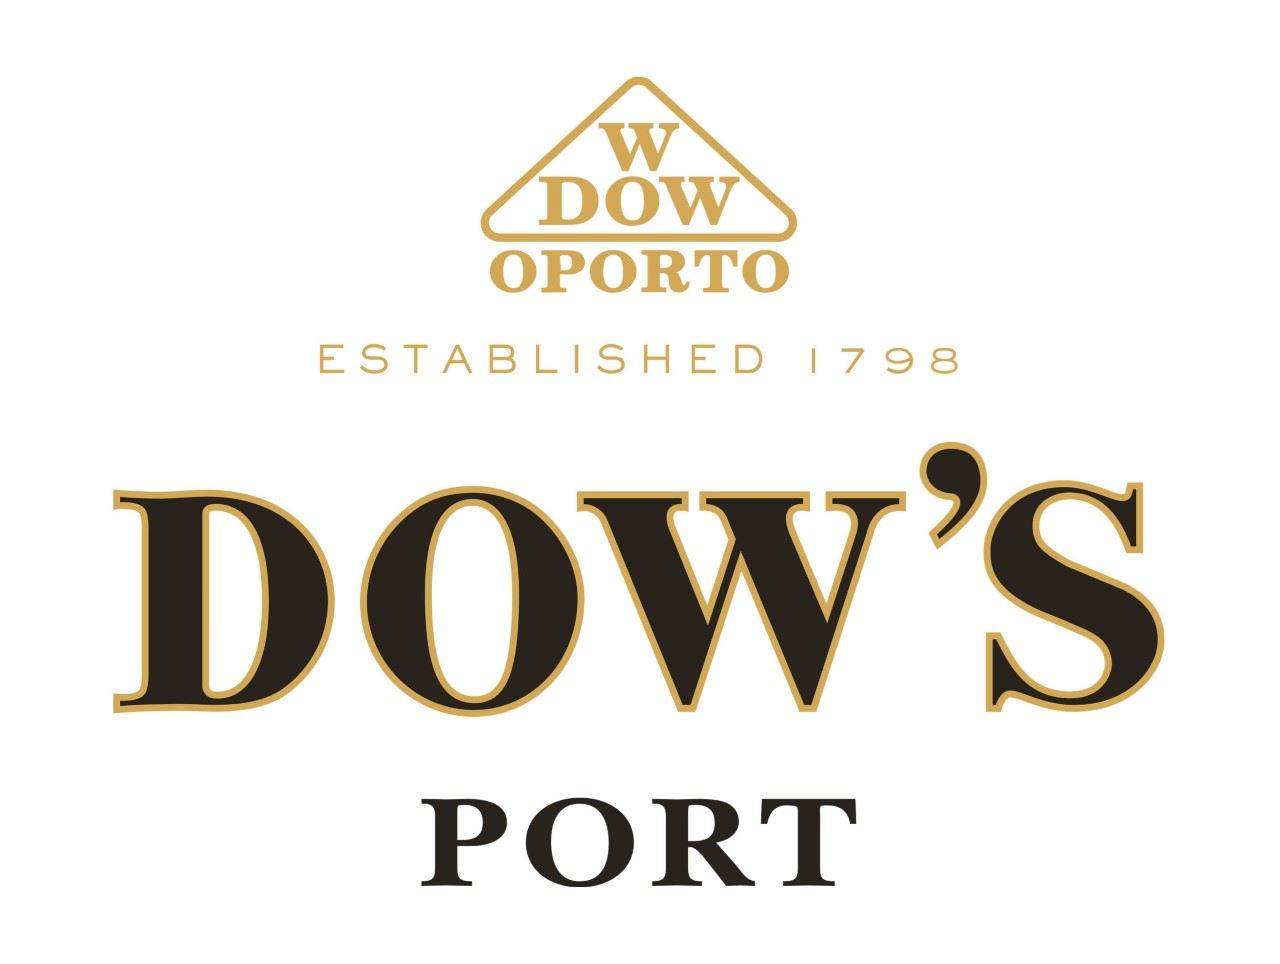 Afbeelding voor fabrikant Dow's port